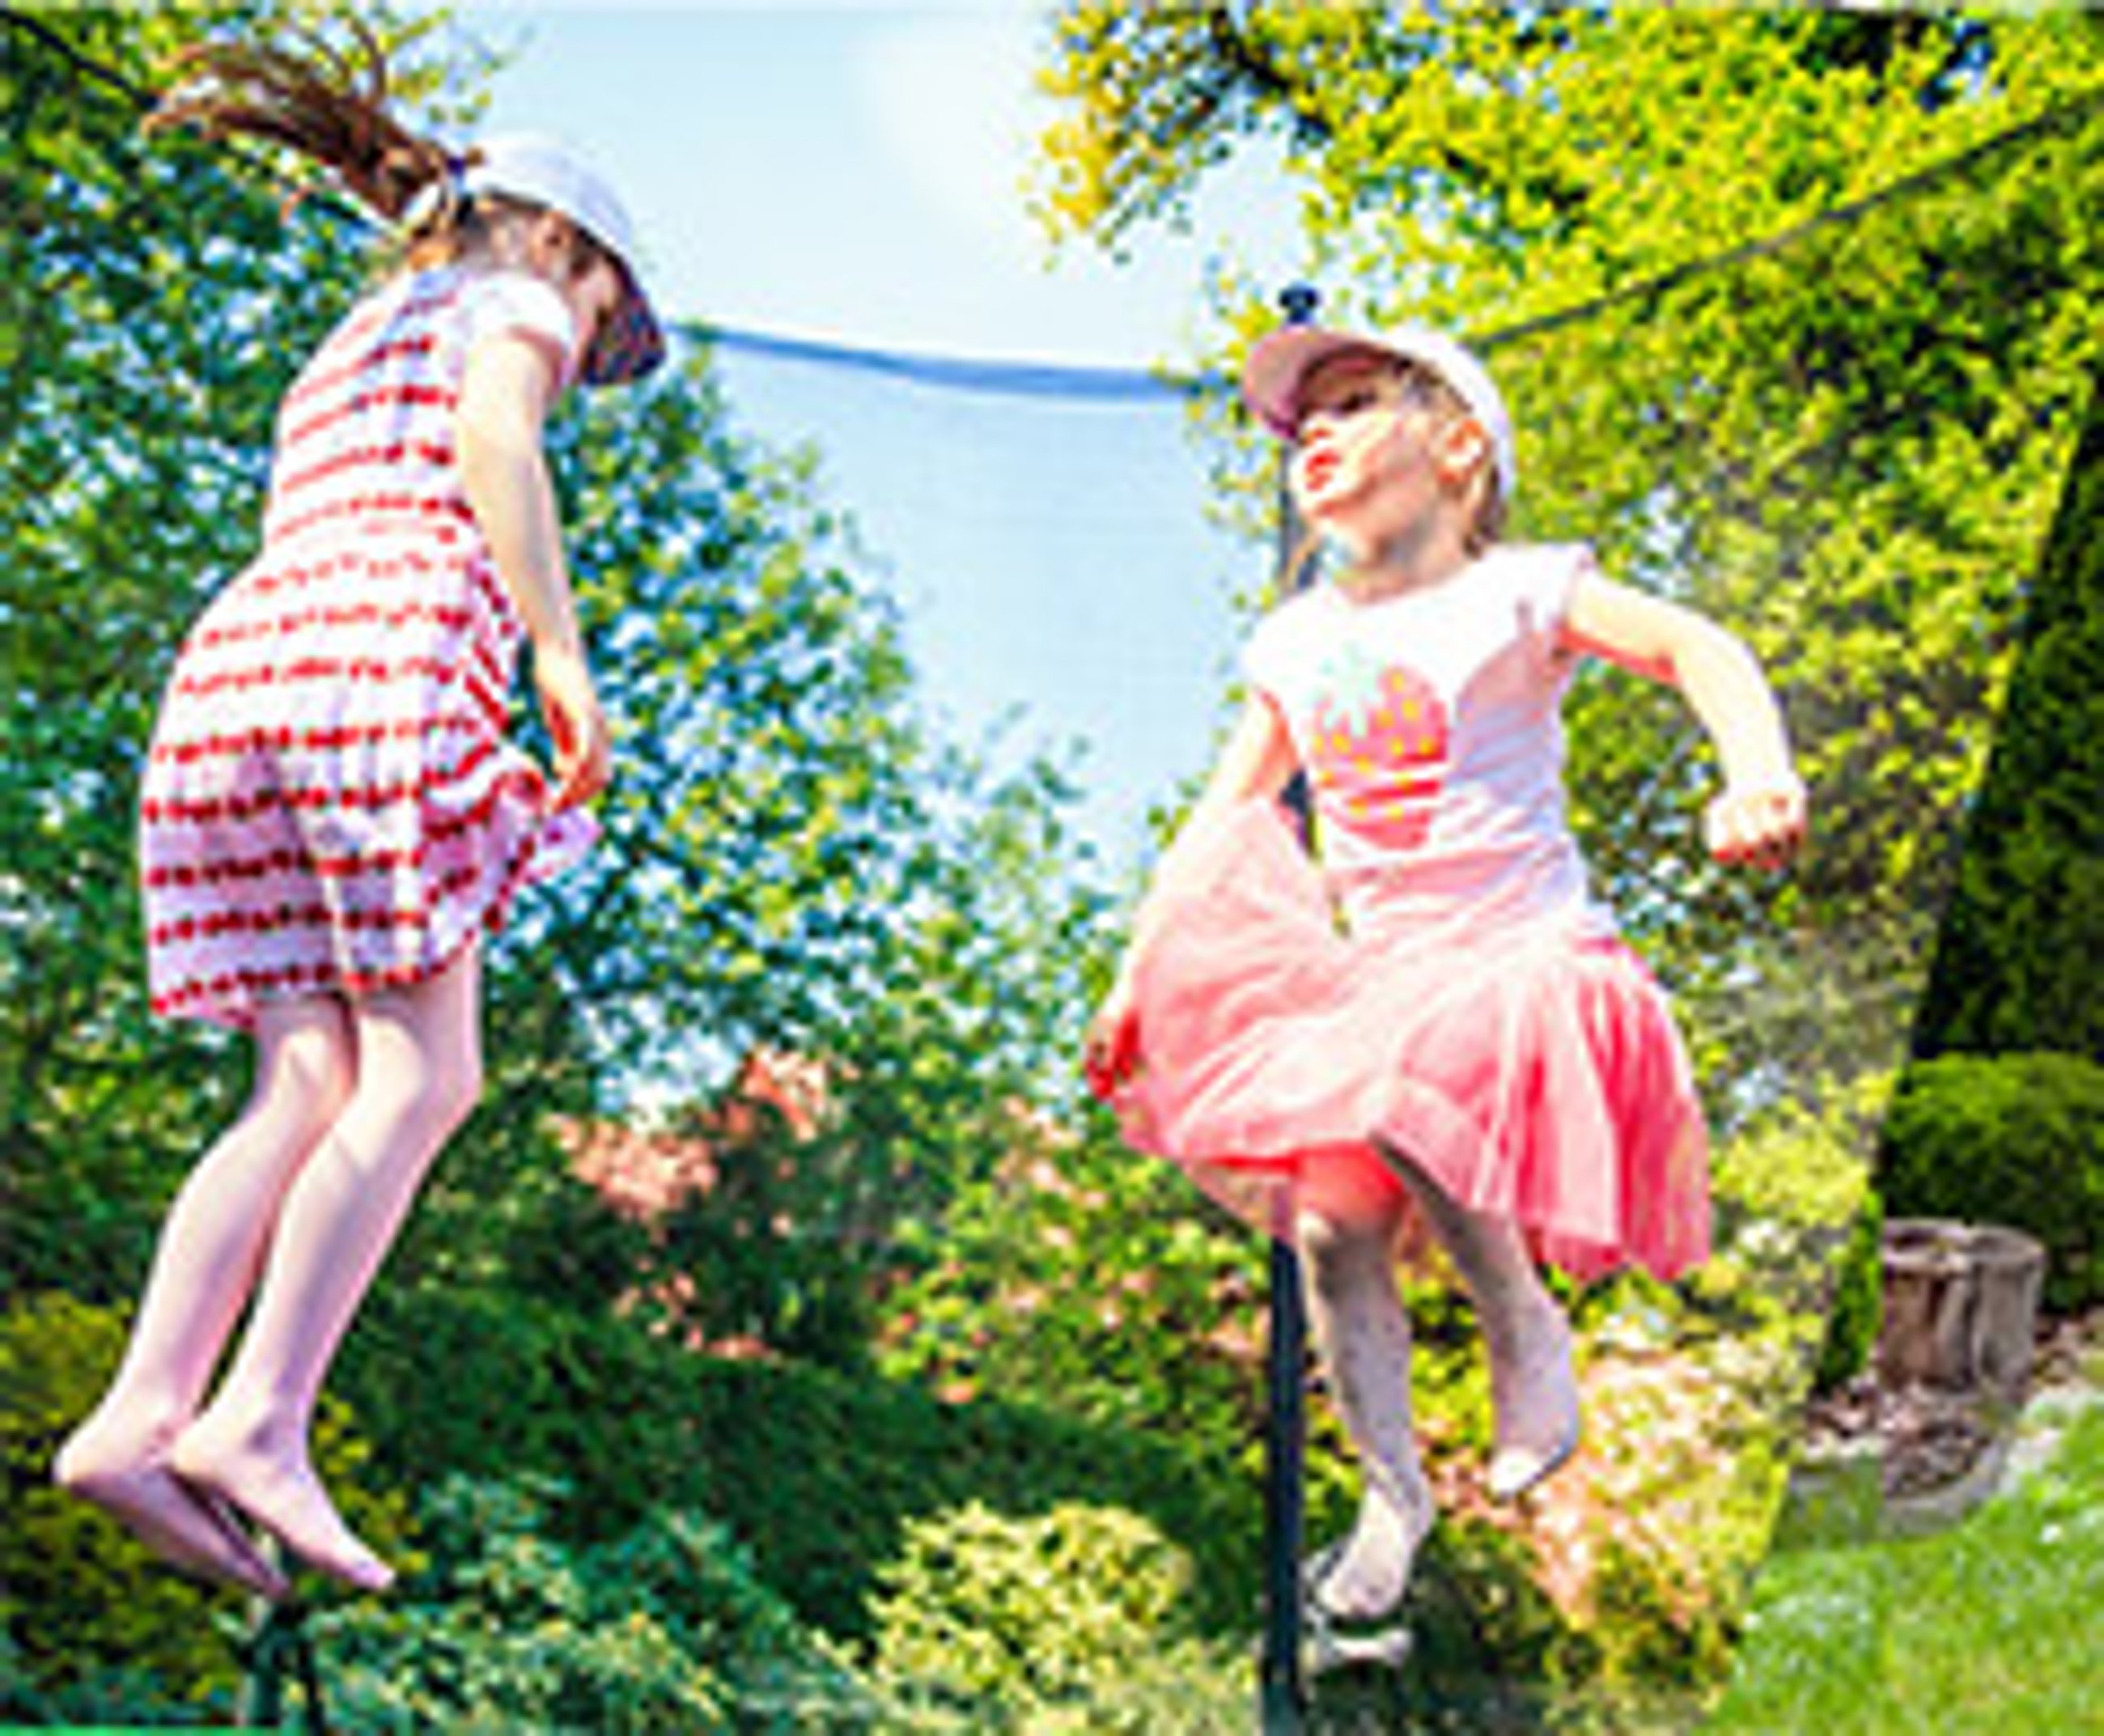 Fröhliche Kinder springen und lachen gemeinsam auf einem Trampolin